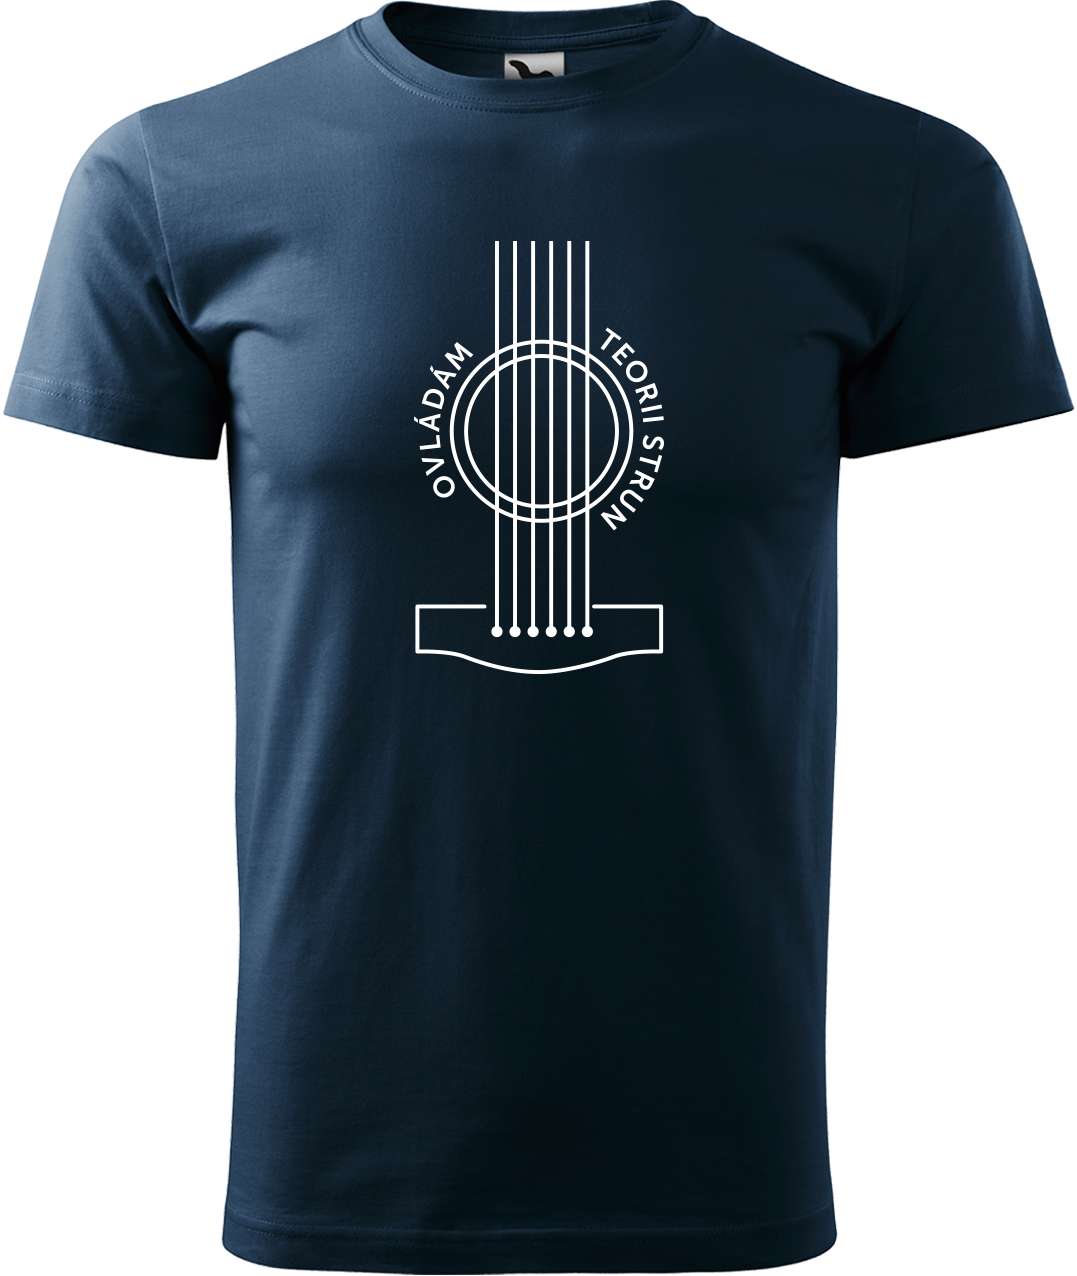 Pánské tričko s kytarou - Teorie strun Velikost: 4XL, Barva: Námořní modrá (02), Střih: pánský